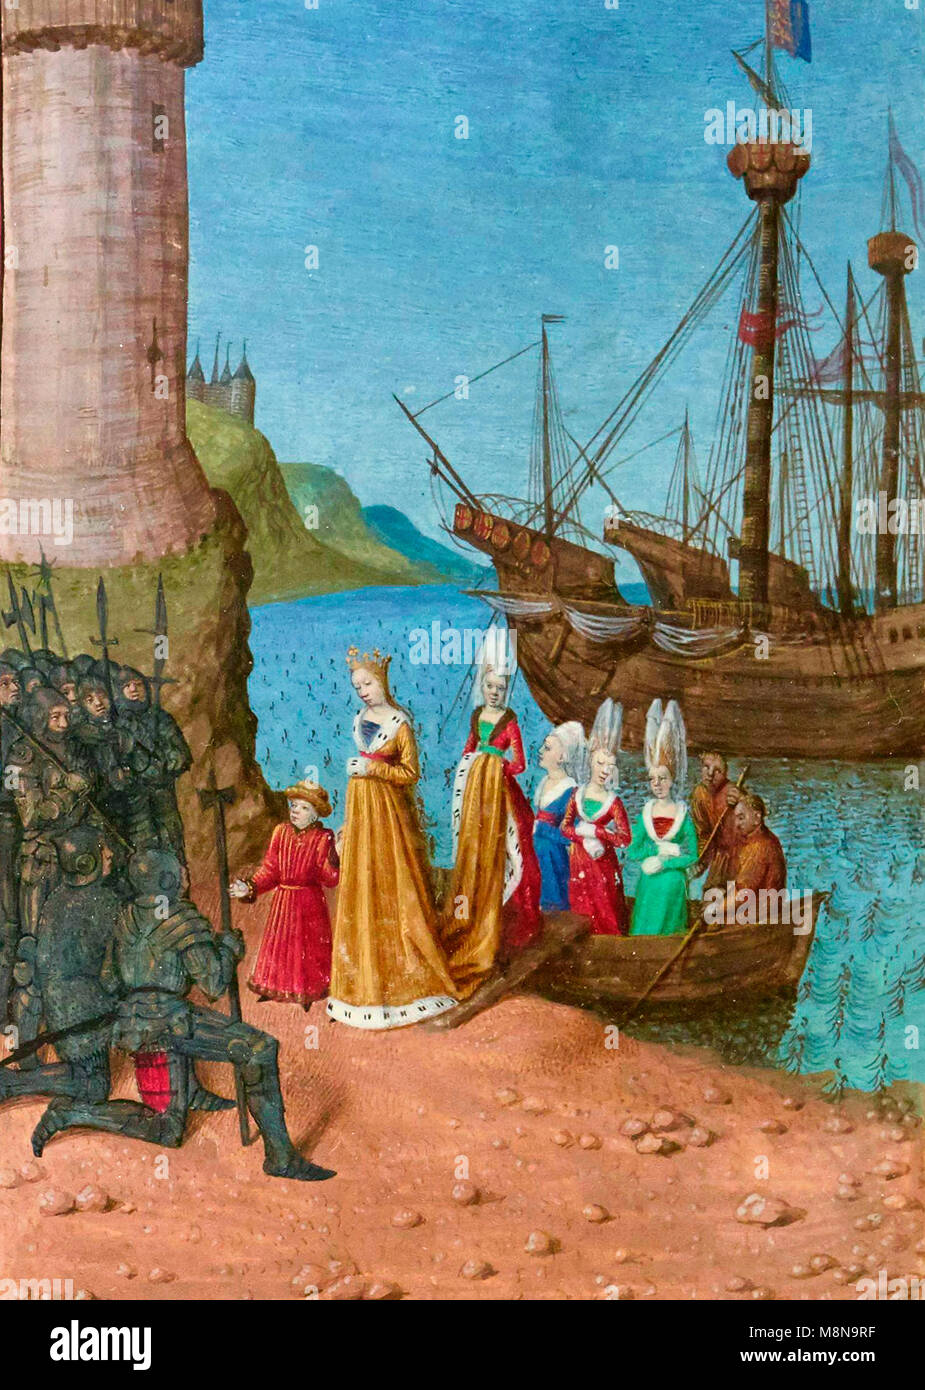 Retour d'Isabelle de France en Angleterre. L'atterrissage à Harwick Harbour, Isabelle de France, épouse d'Édouard II d'Angleterre, accompagnée de son fils Edouard, aborde les soldats qui sont venus de l'appréhender. Banque D'Images